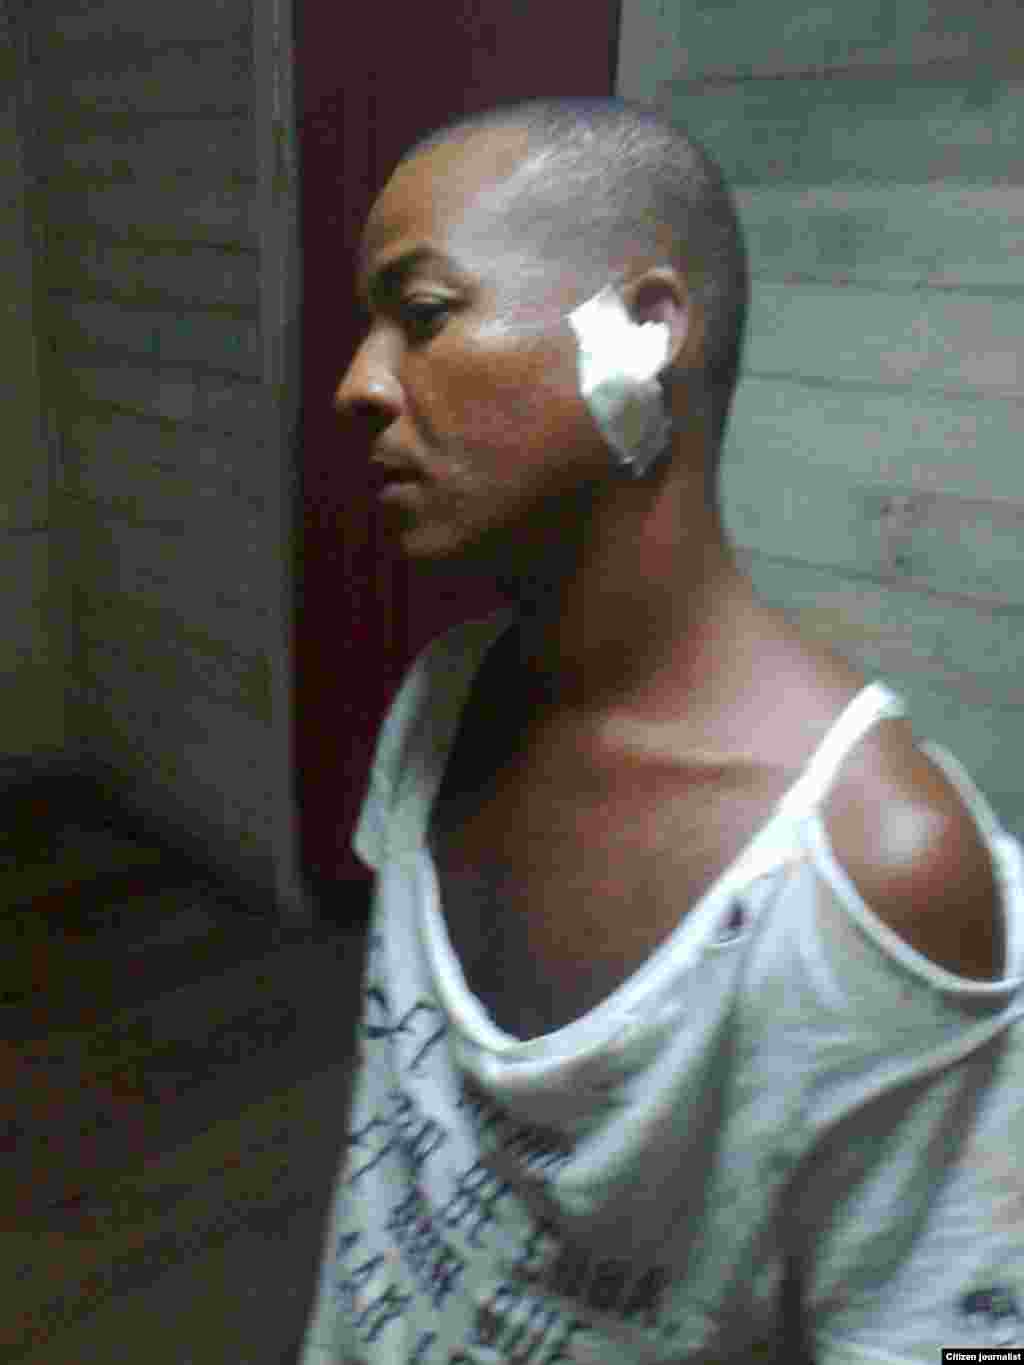 Reporte ciudadano desde Santiago de Cuba de un activista que fue detenido y golpeado cuando participaba en una marcha cívica.